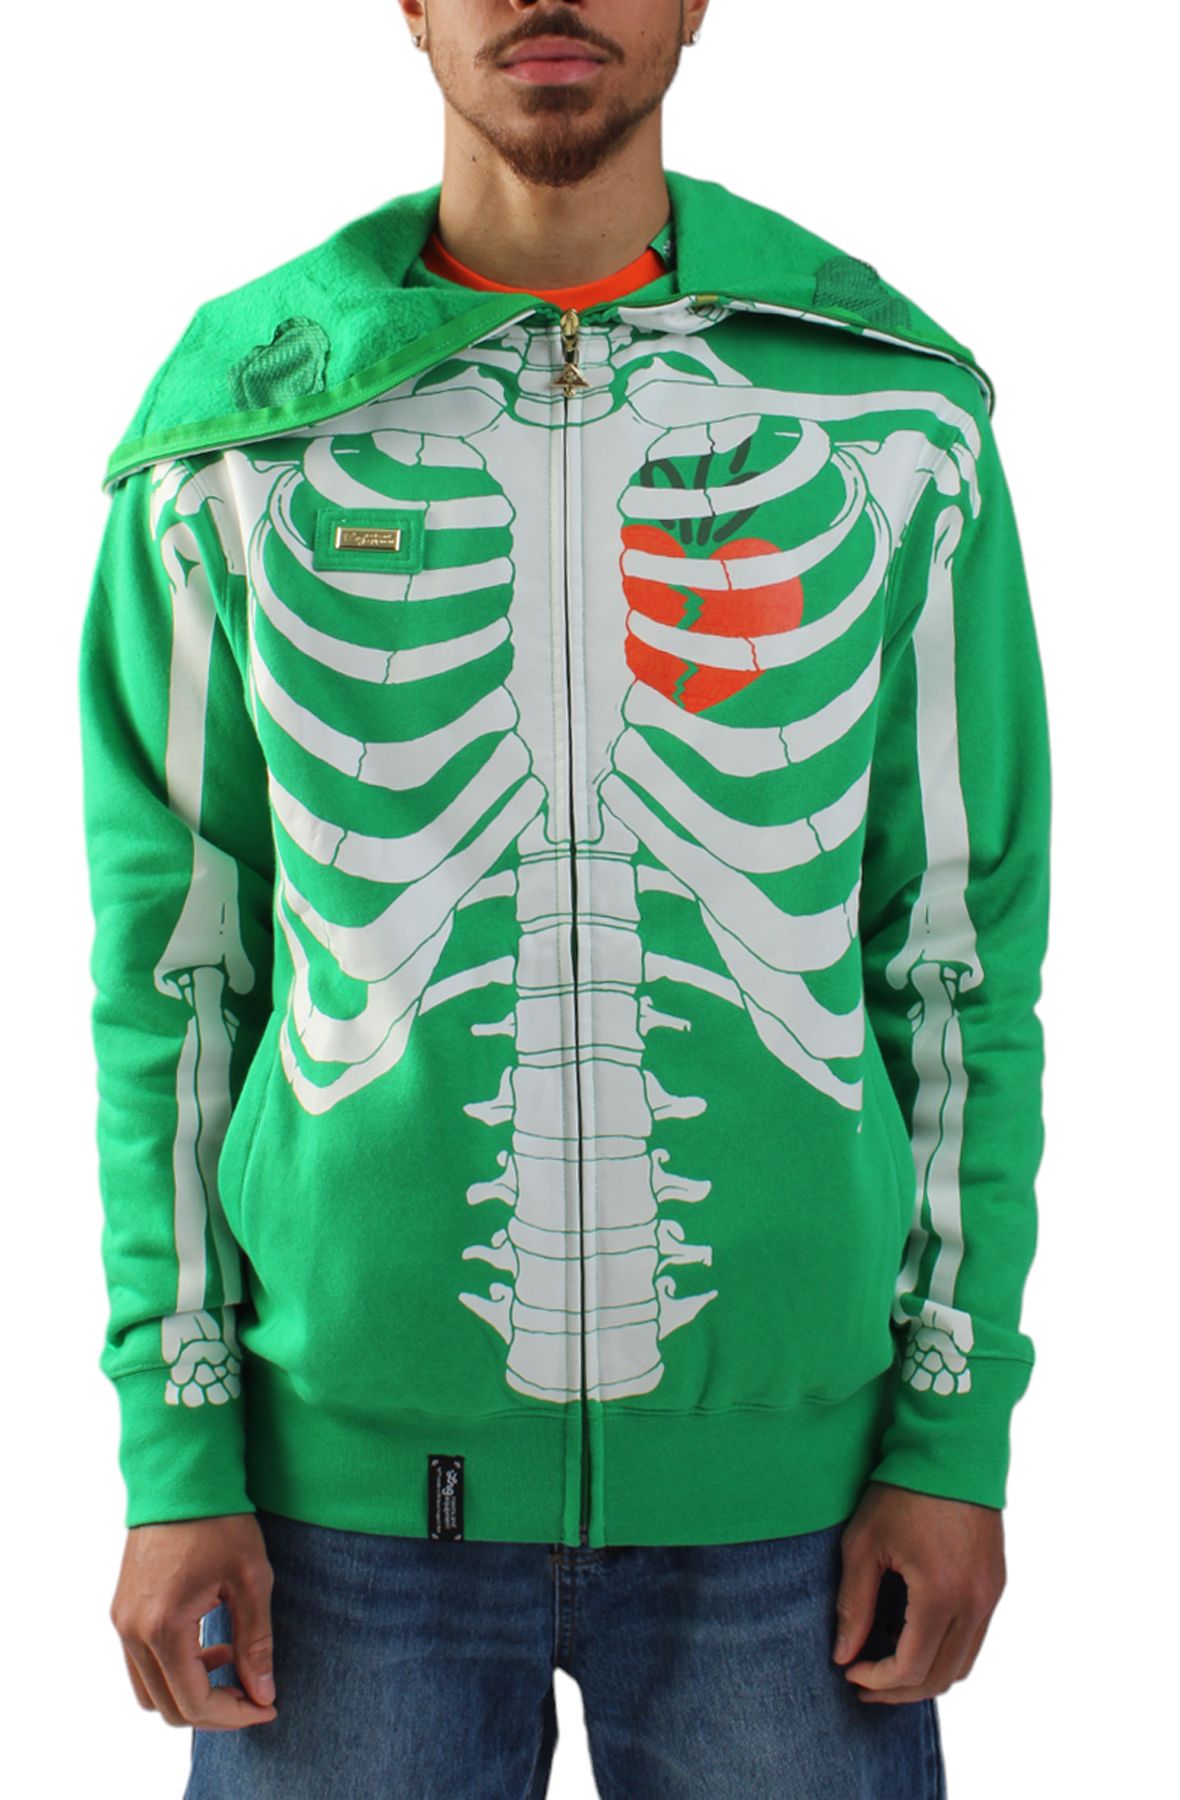 Glow in the Dark Skeleton Hoodie - Full Zip Hooded Costume